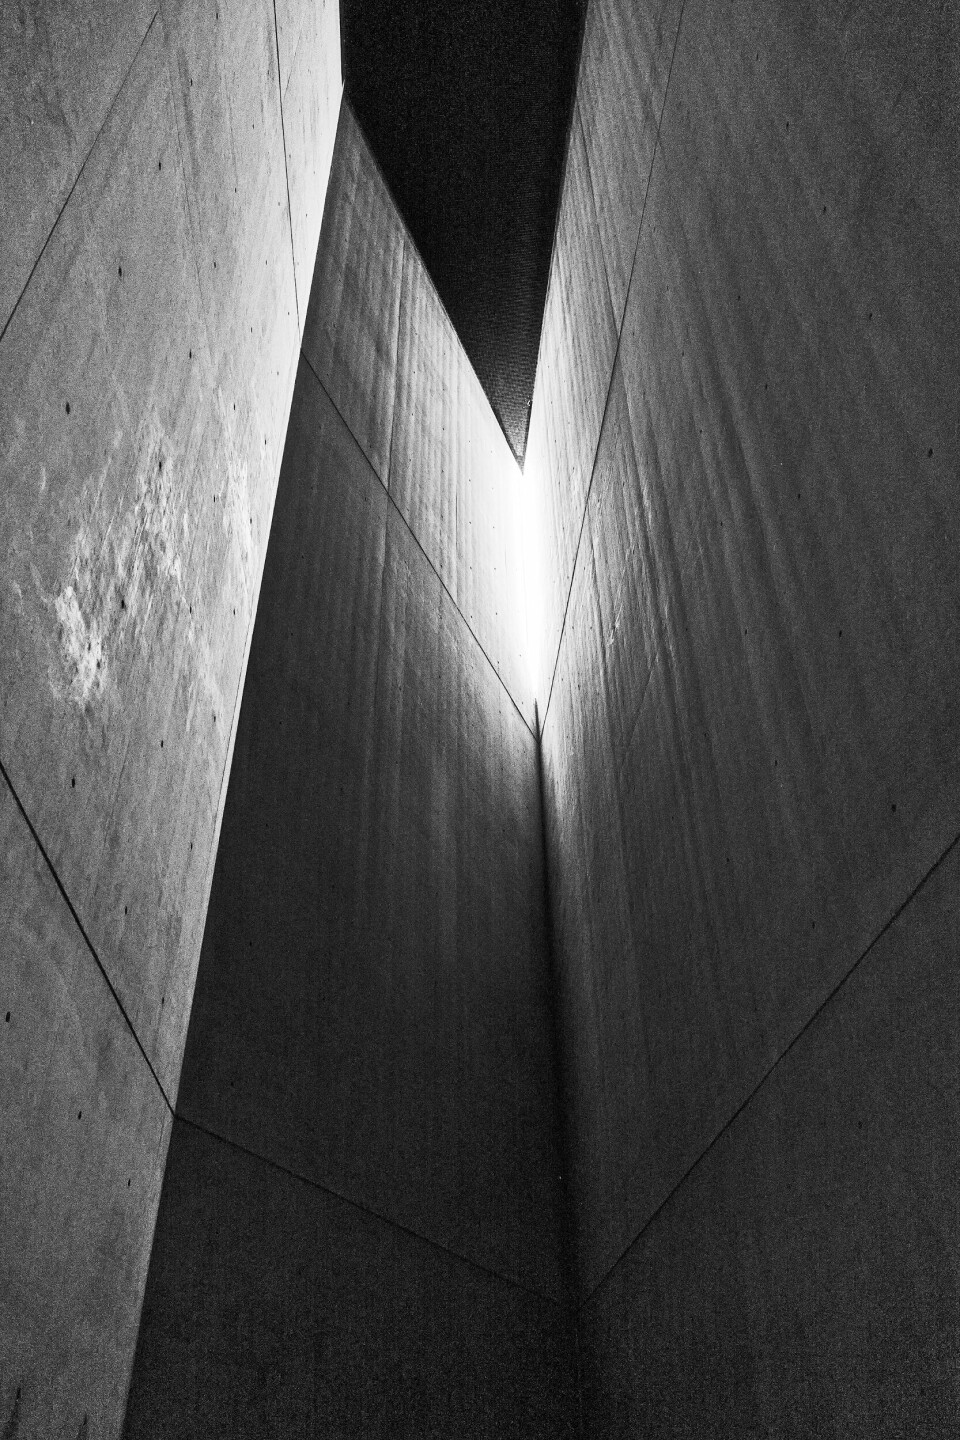 Bare et av tomrommene i Libeskinds museum er tilgjengelig for besøkende: betongtårnet som representerer Holocaust.